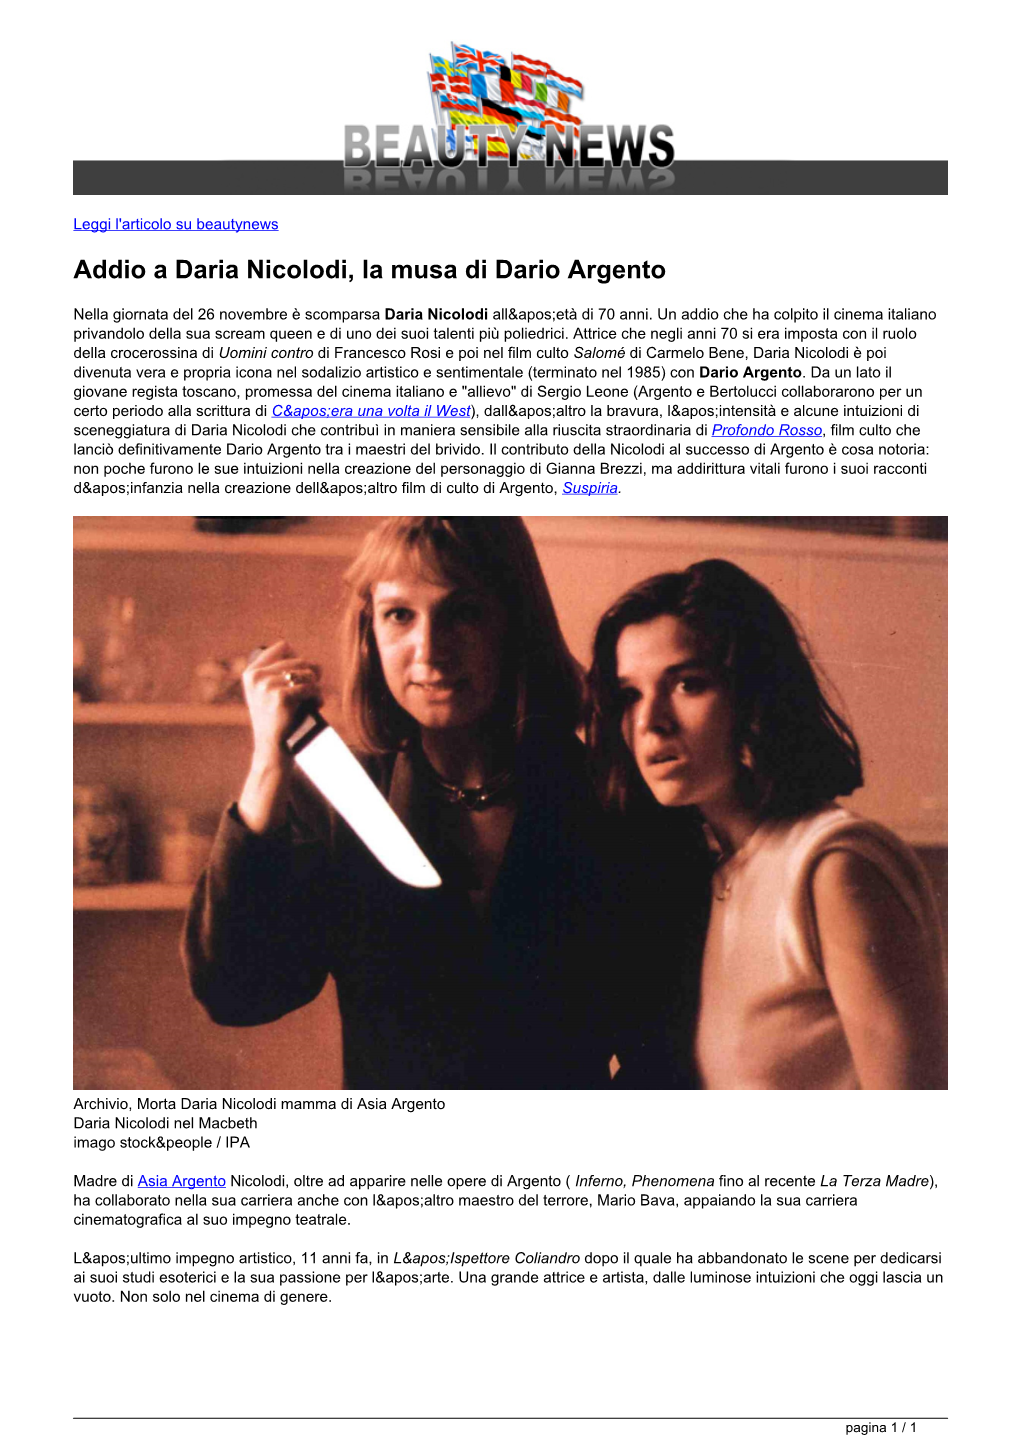 Addio a Daria Nicolodi, La Musa Di Dario Argento